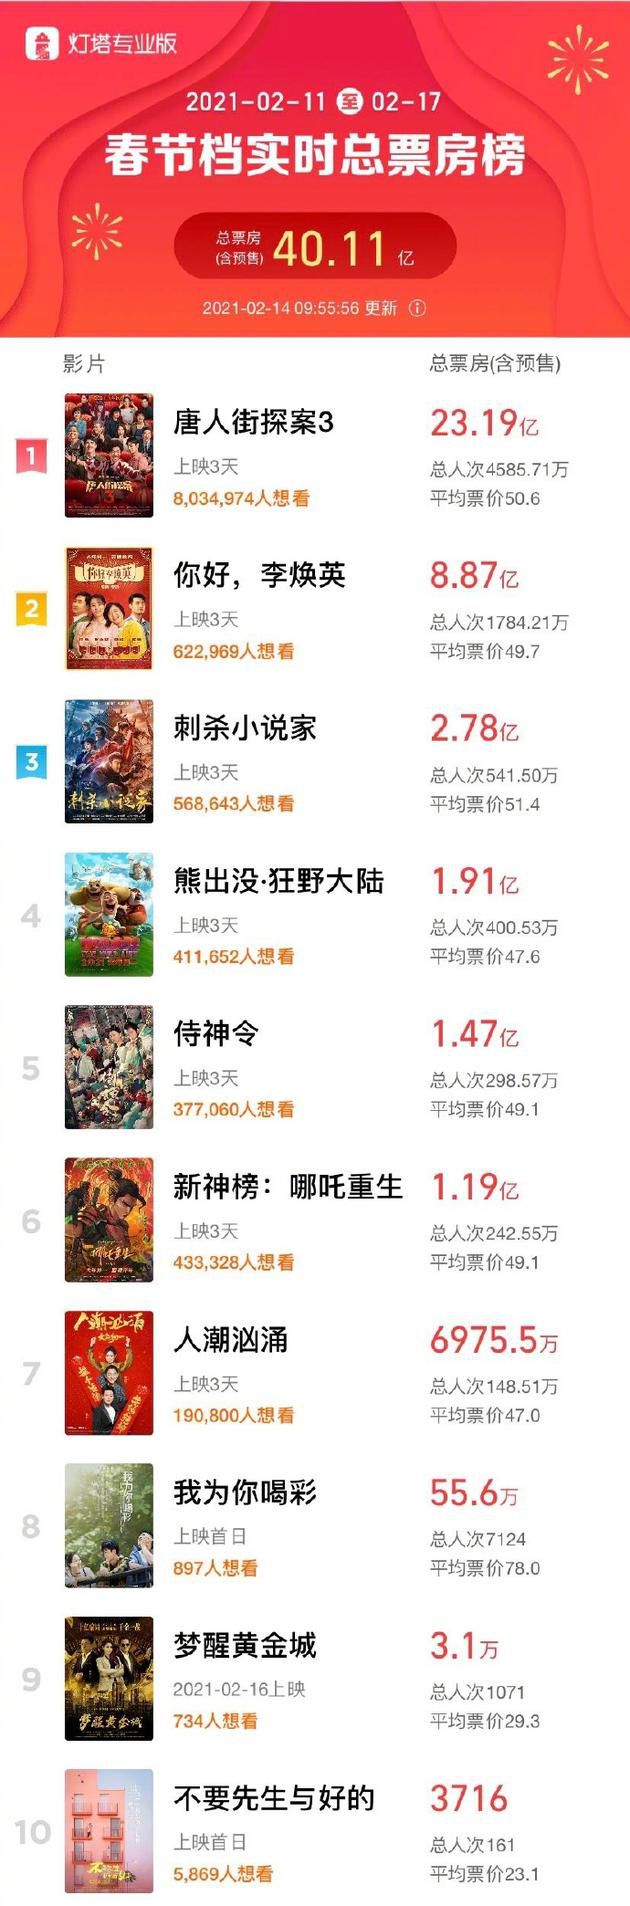 春节档总票房破40亿 《唐探3》超23亿位居第一